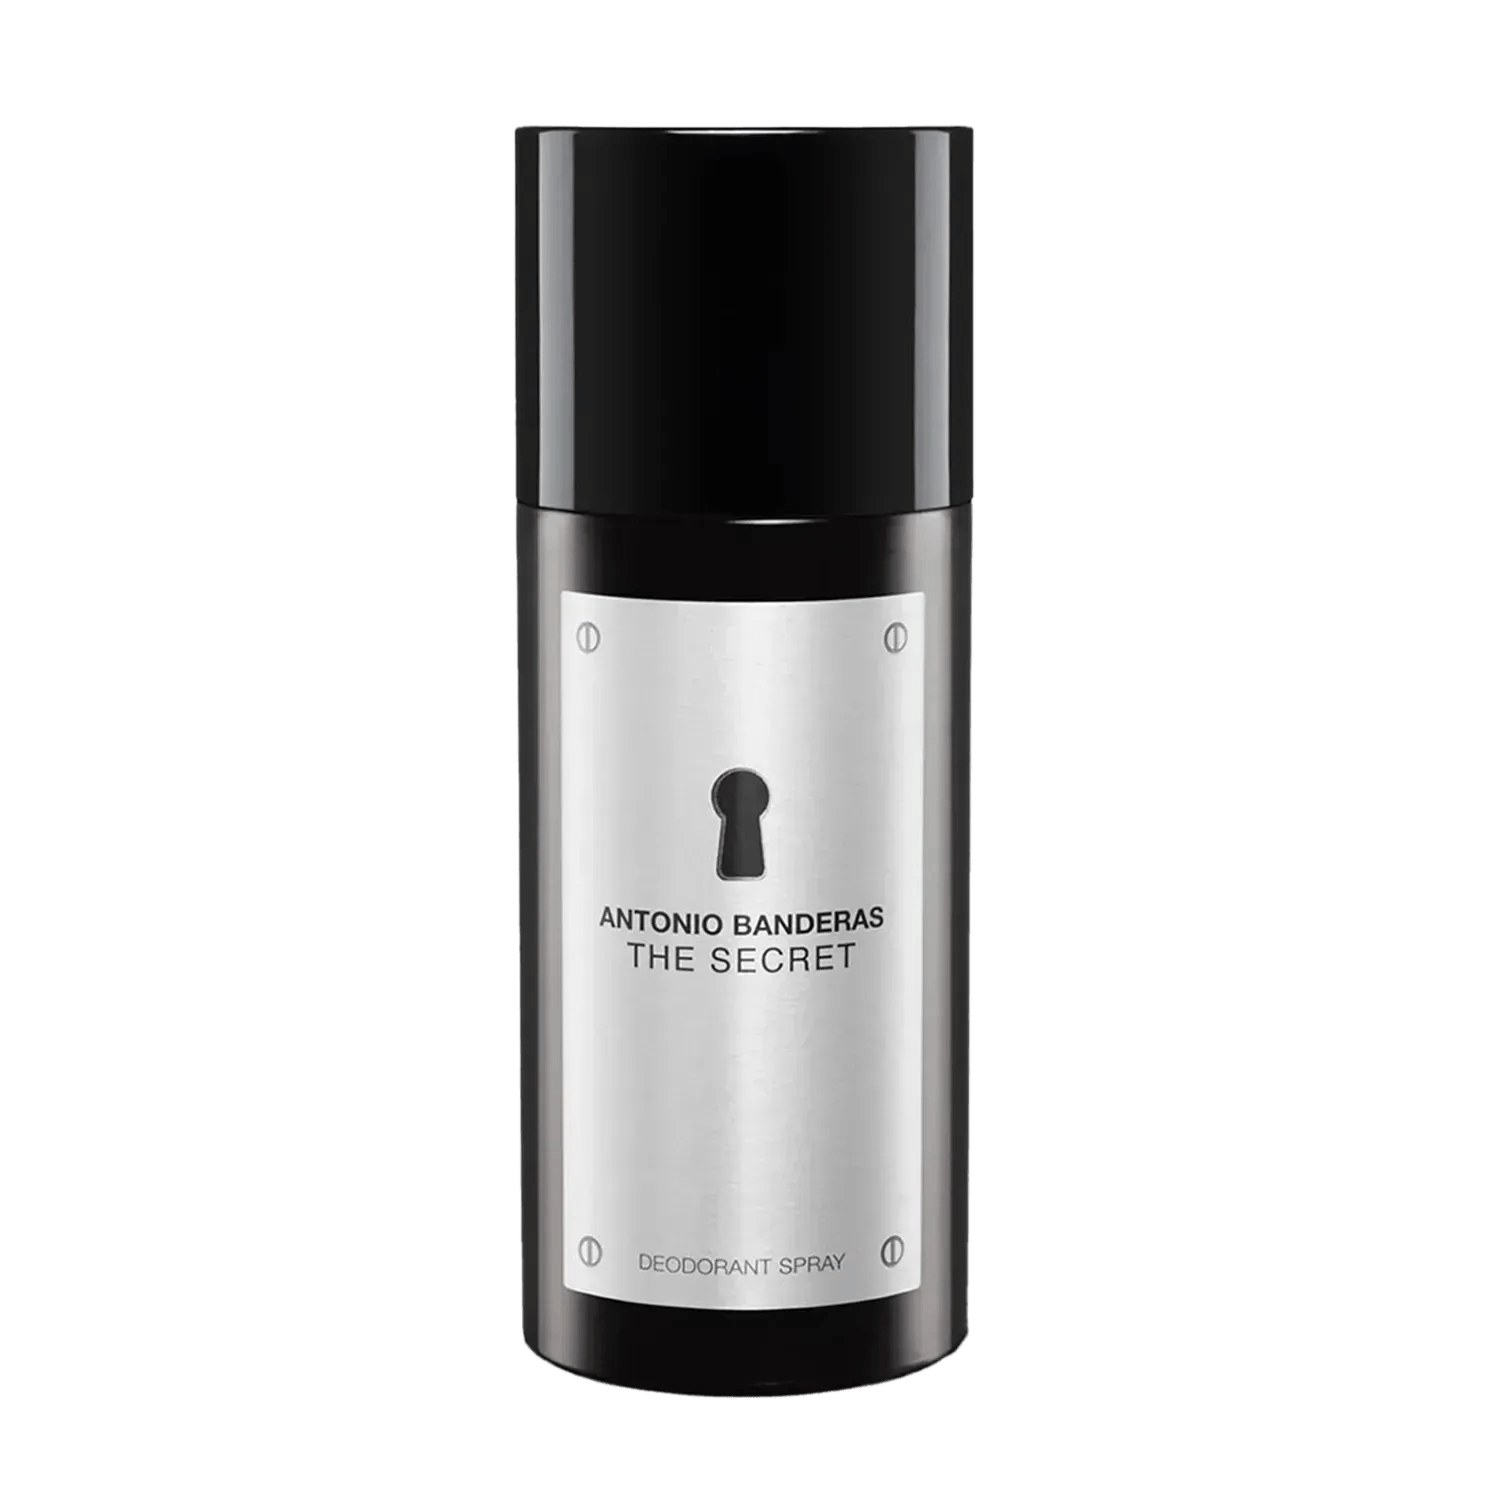 Antonio Banderas | Antonio Banderas The Secret Deodorant Spray (150ml)